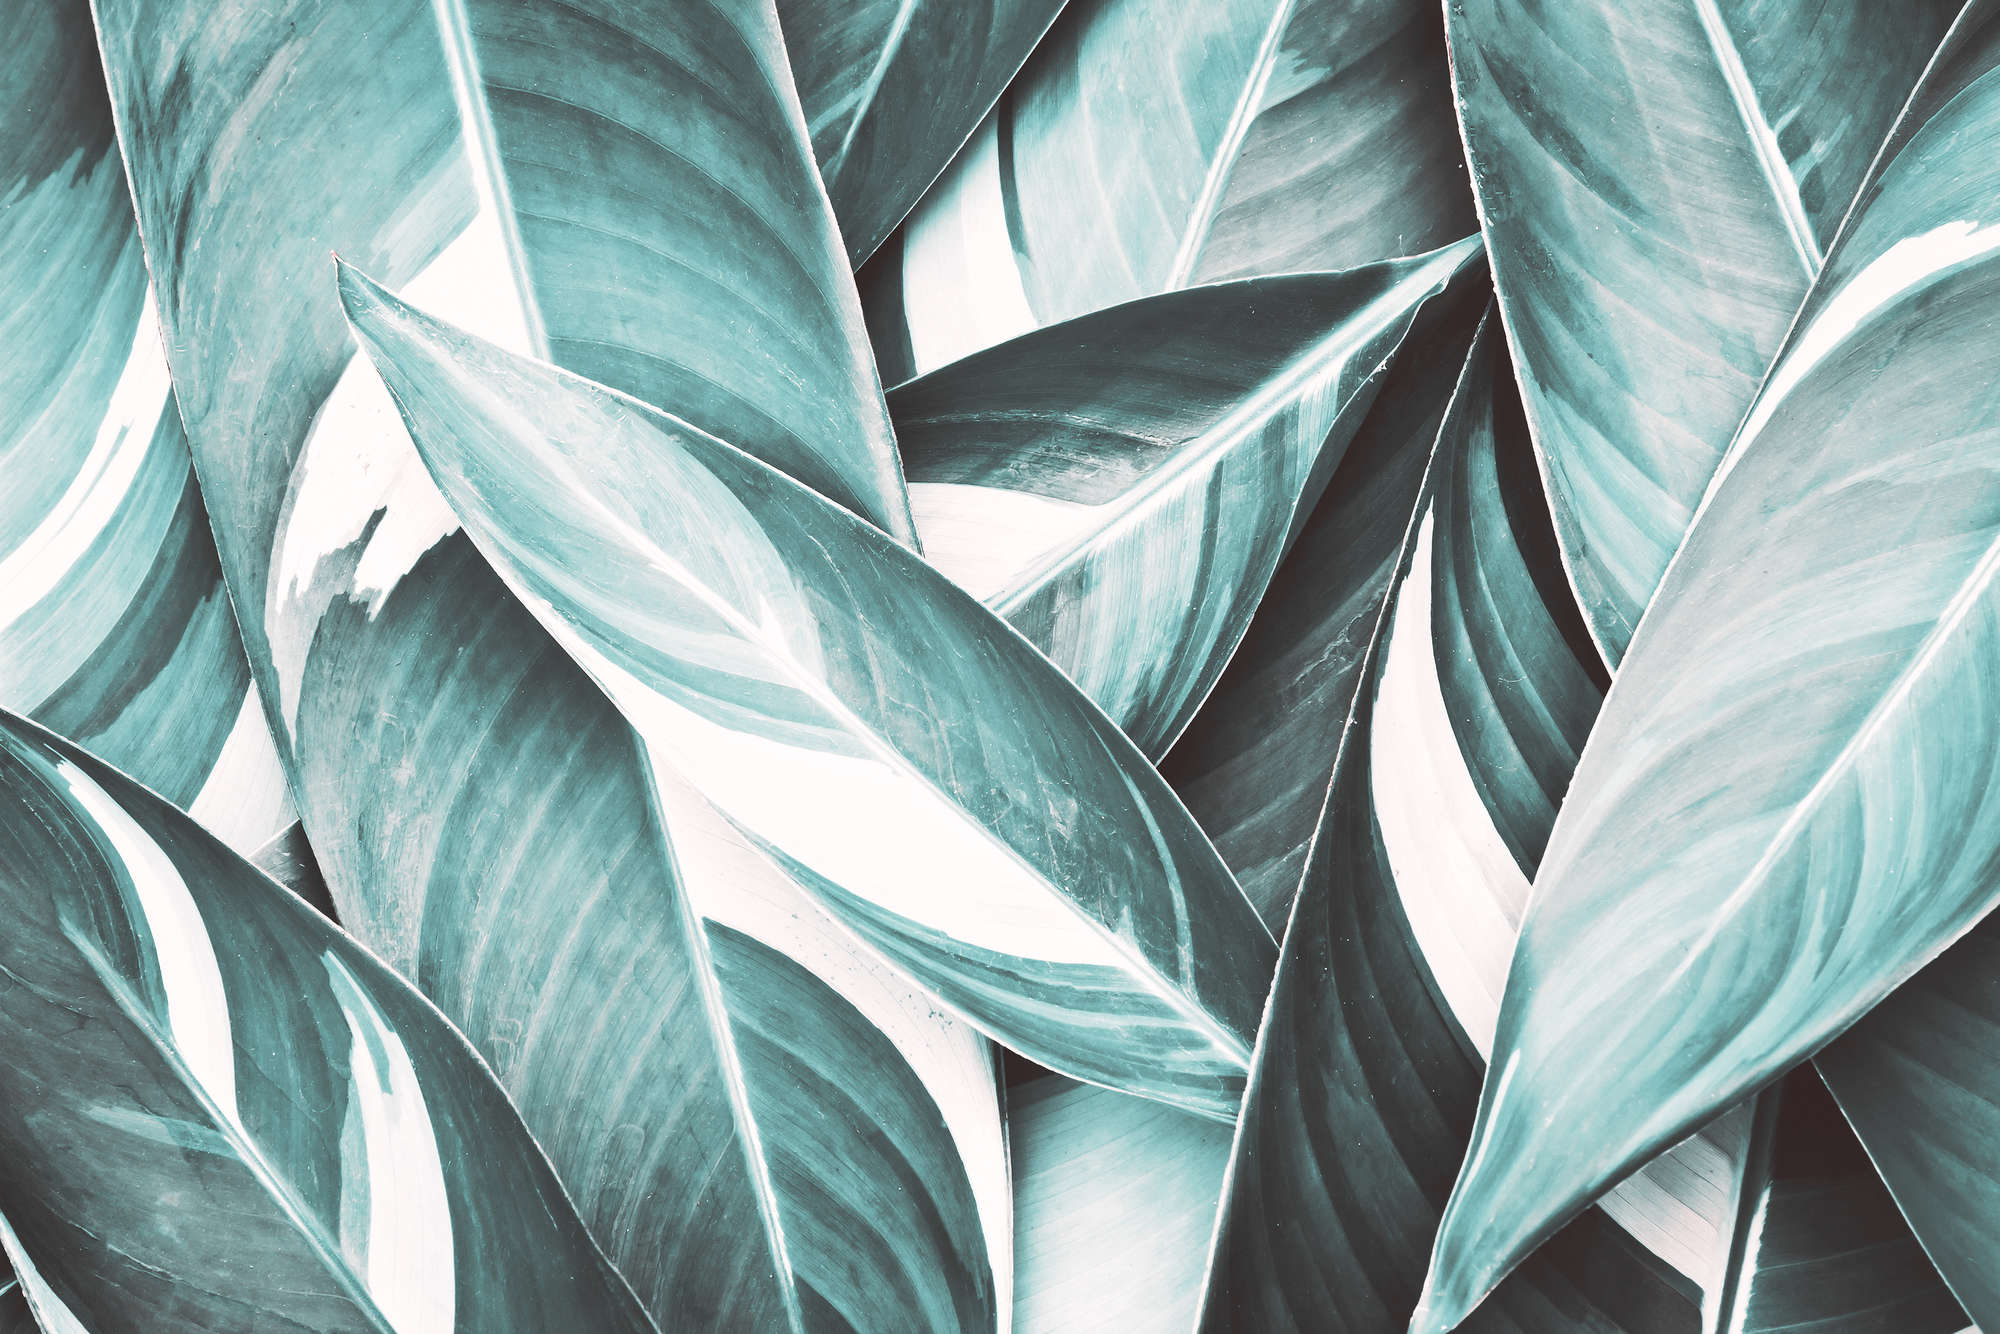             Natur Fototapete Palmenblätter Motiv grau auf Matt Glattvlies
        